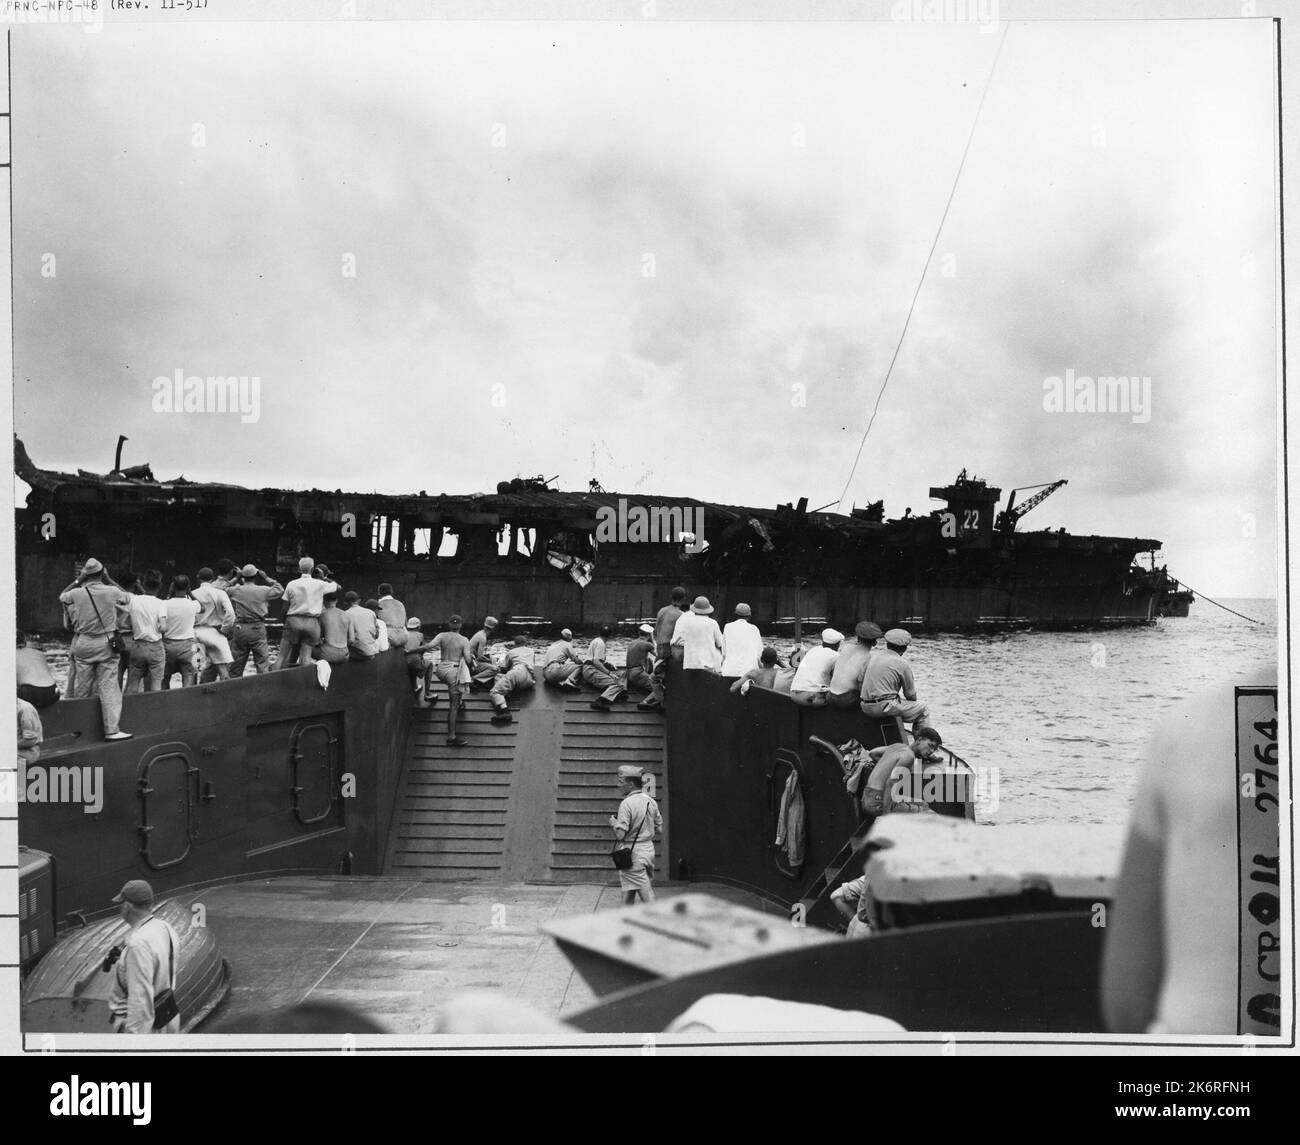 Foto - Korrespondenten sehen USS Independence während der Operation Crossroads'Korrespondenten sehen USS Independence (CVL-22), die während der Operation Crossroads beschädigt wurde. Auf See.'. Stockfoto